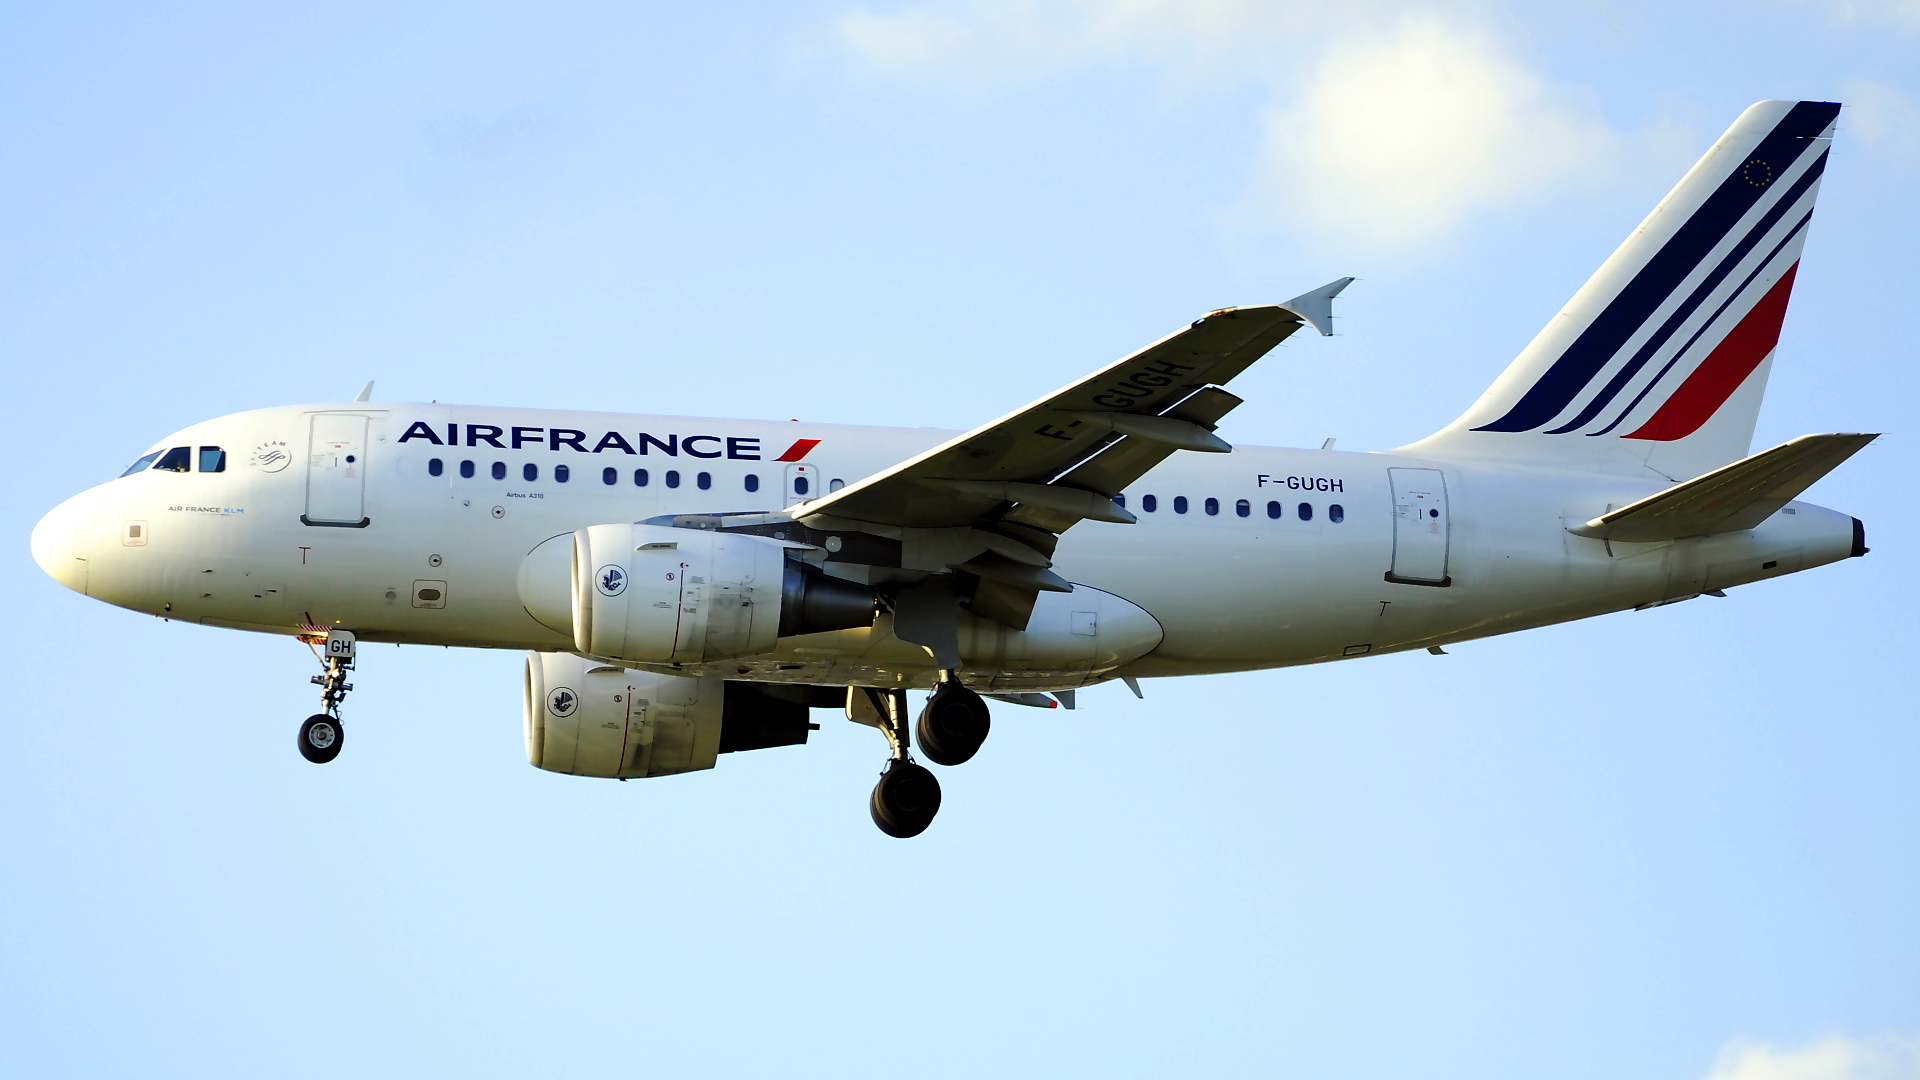 F-GUGH ✈ Air France Airbus 318-111 @ London-Heathrow